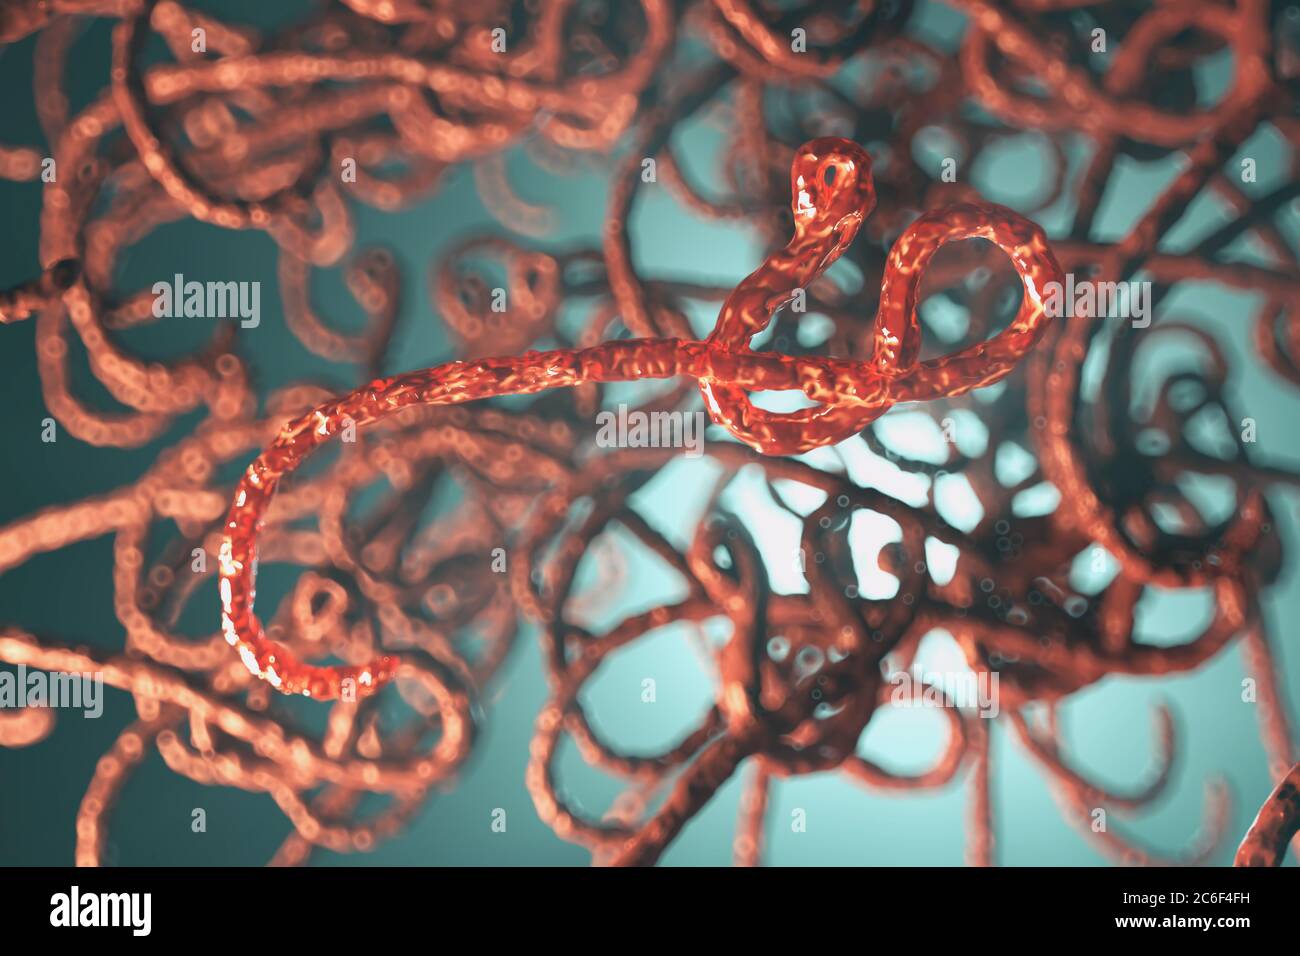 Vista microscopica del virus ebola, illustrazione 3d Foto Stock